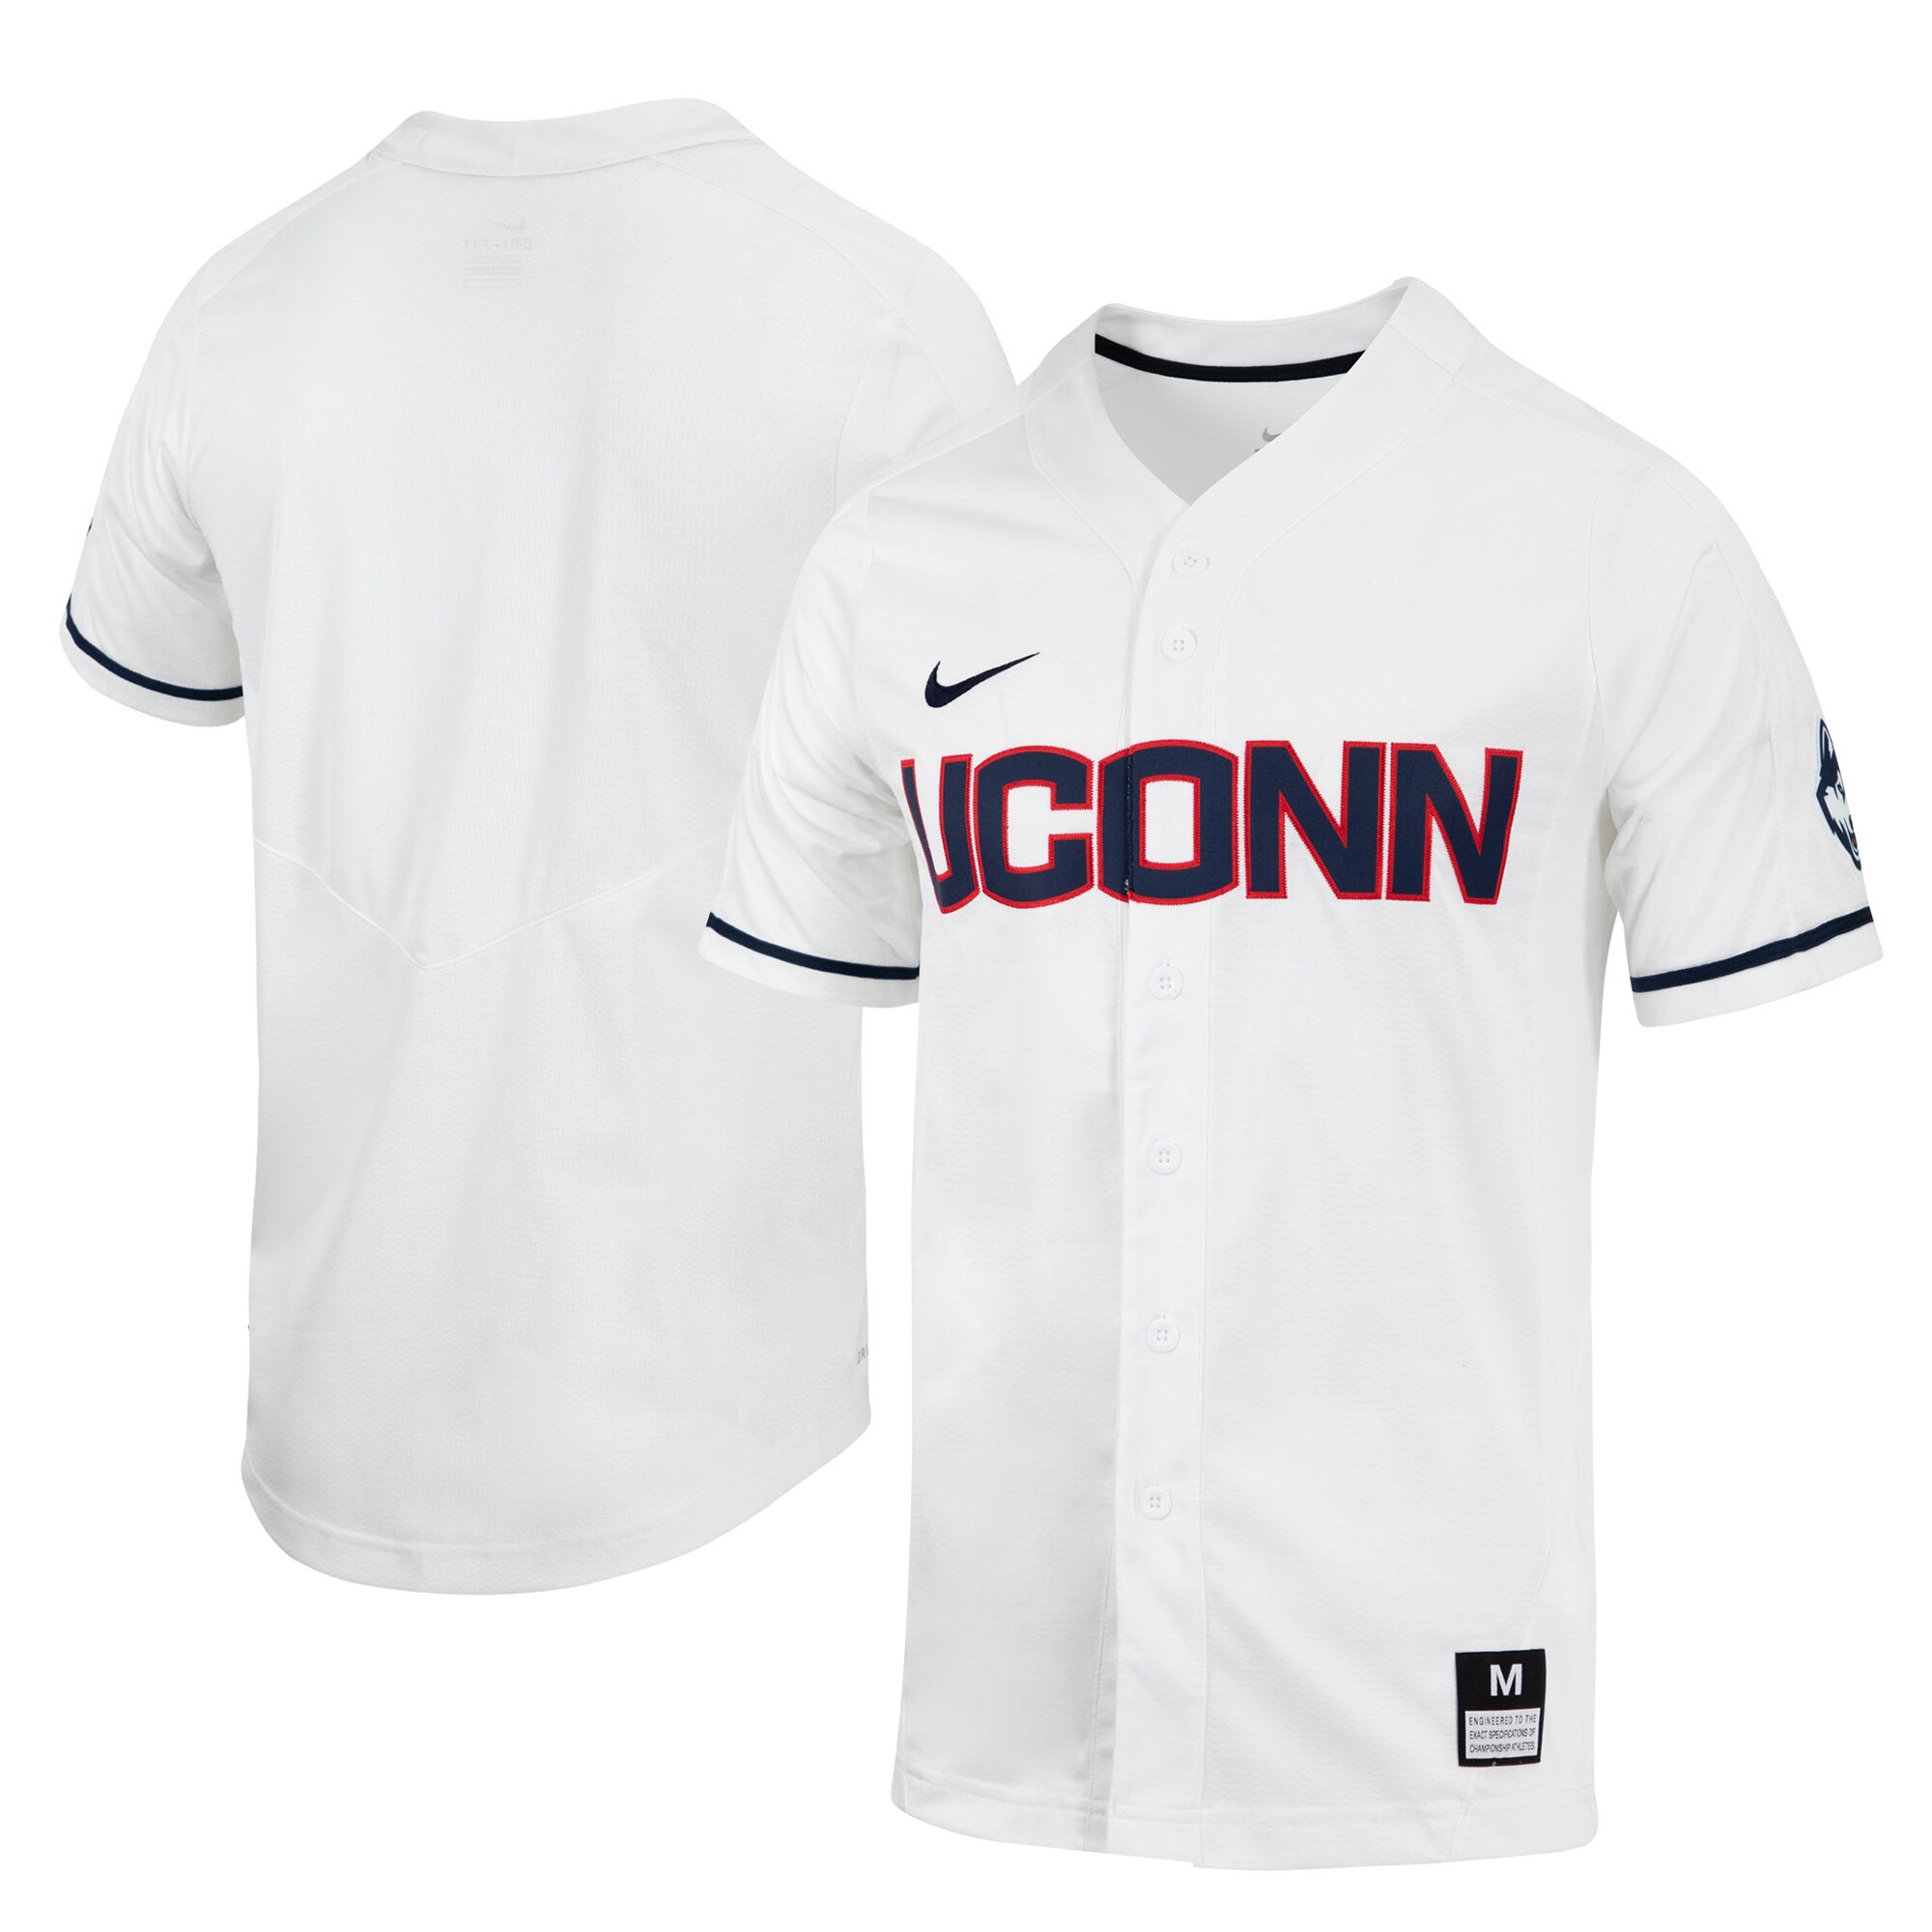 Uconn Huskies Replica Full-Button Baseball Jersey - White For Youth Women Men